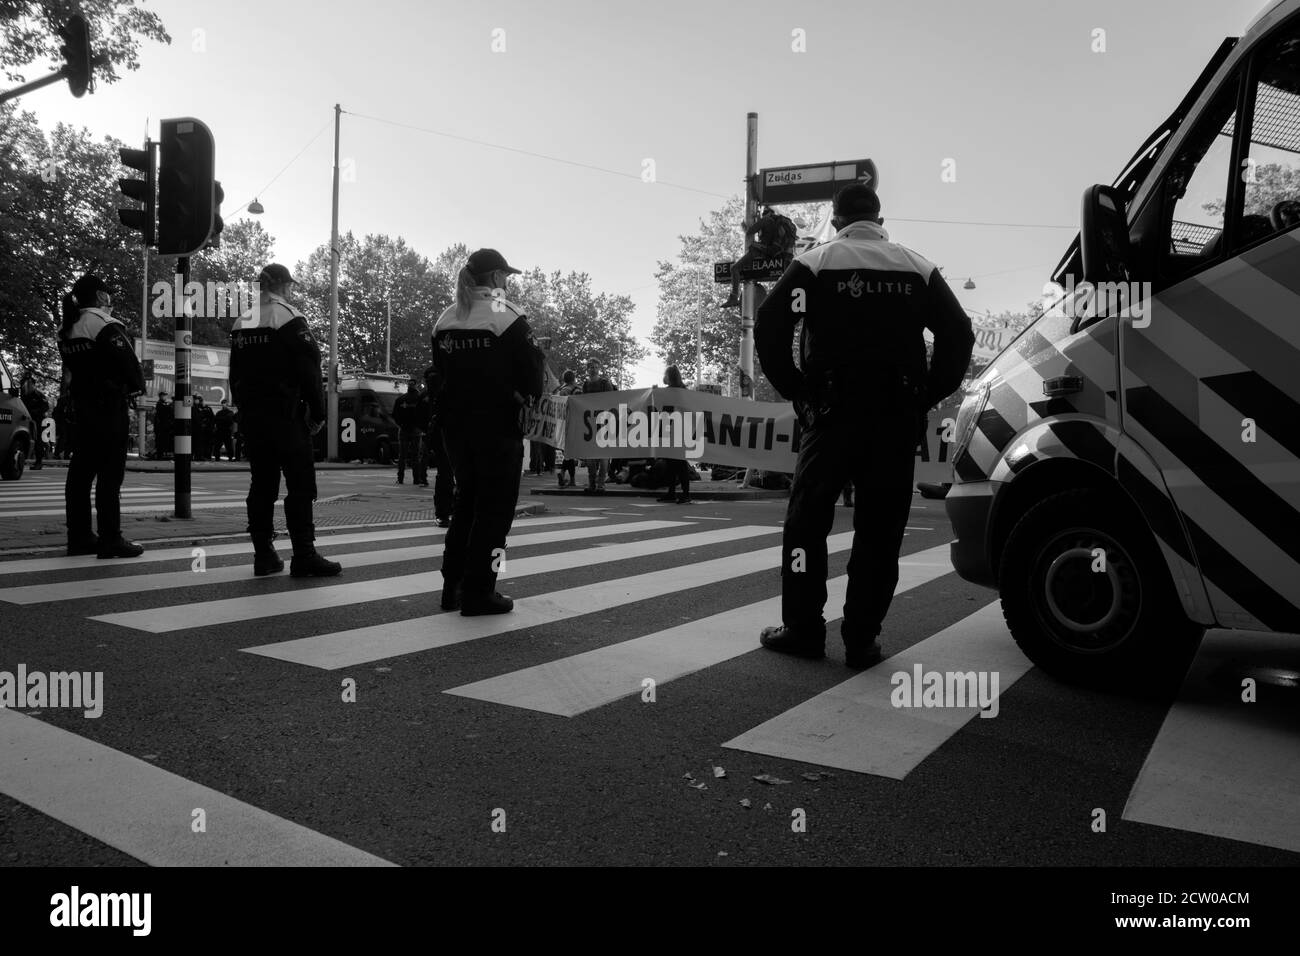 Polizei Männer Bewachen Die Demonstranten Die Rebellion Aussterben Demonstration An Amsterdam Süd Niederlande 21-9-2020 In Schwarz Und Weiß Stockfoto